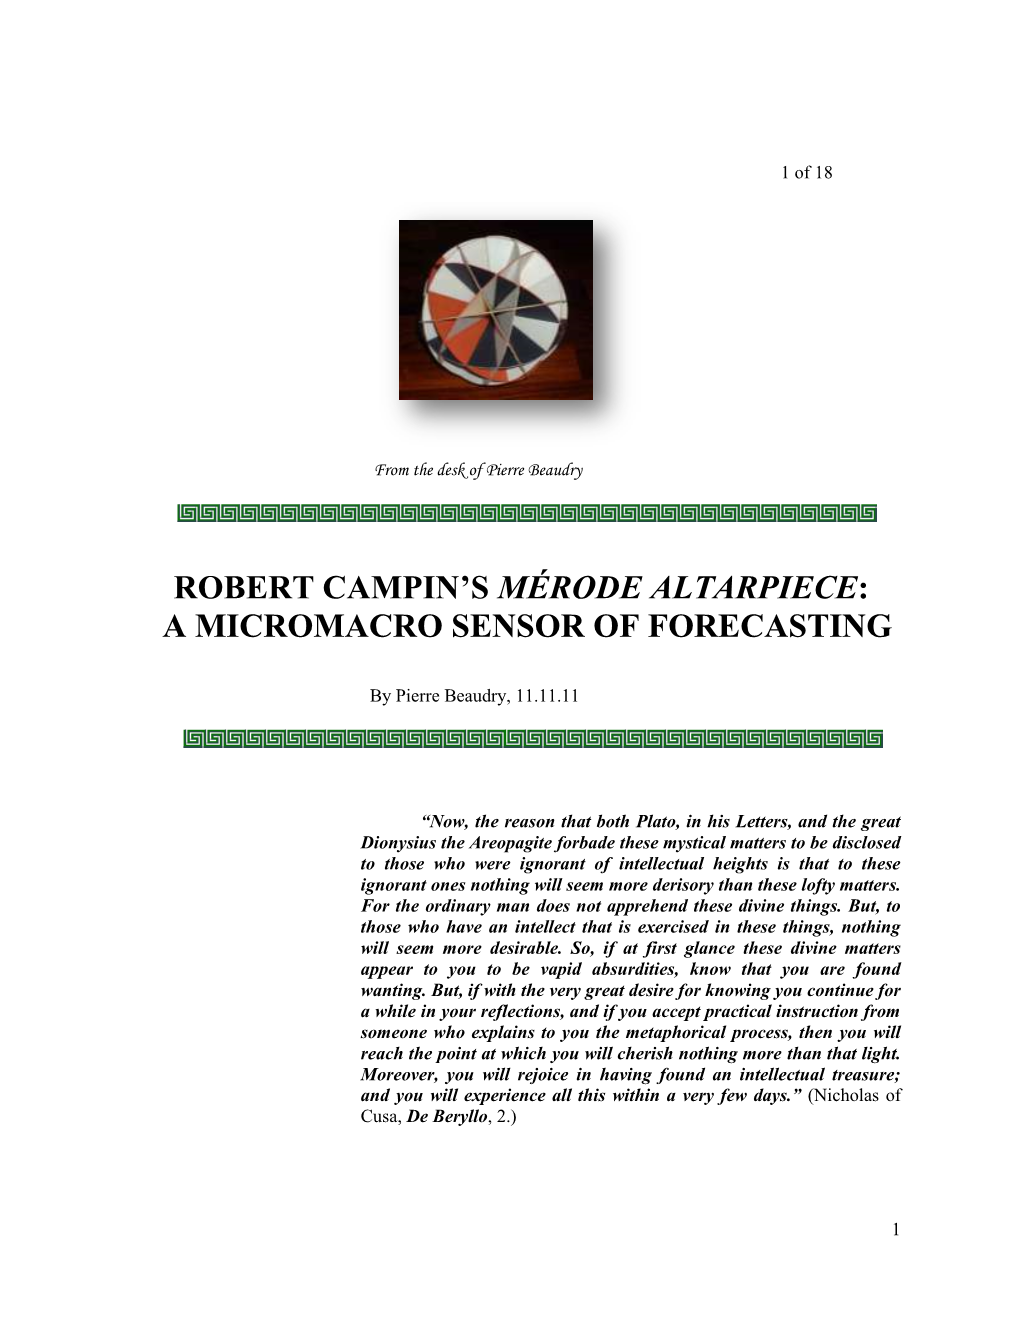 Robert Campin's Mérode Altarpiece: a Micromacro Sensor of Forecasting